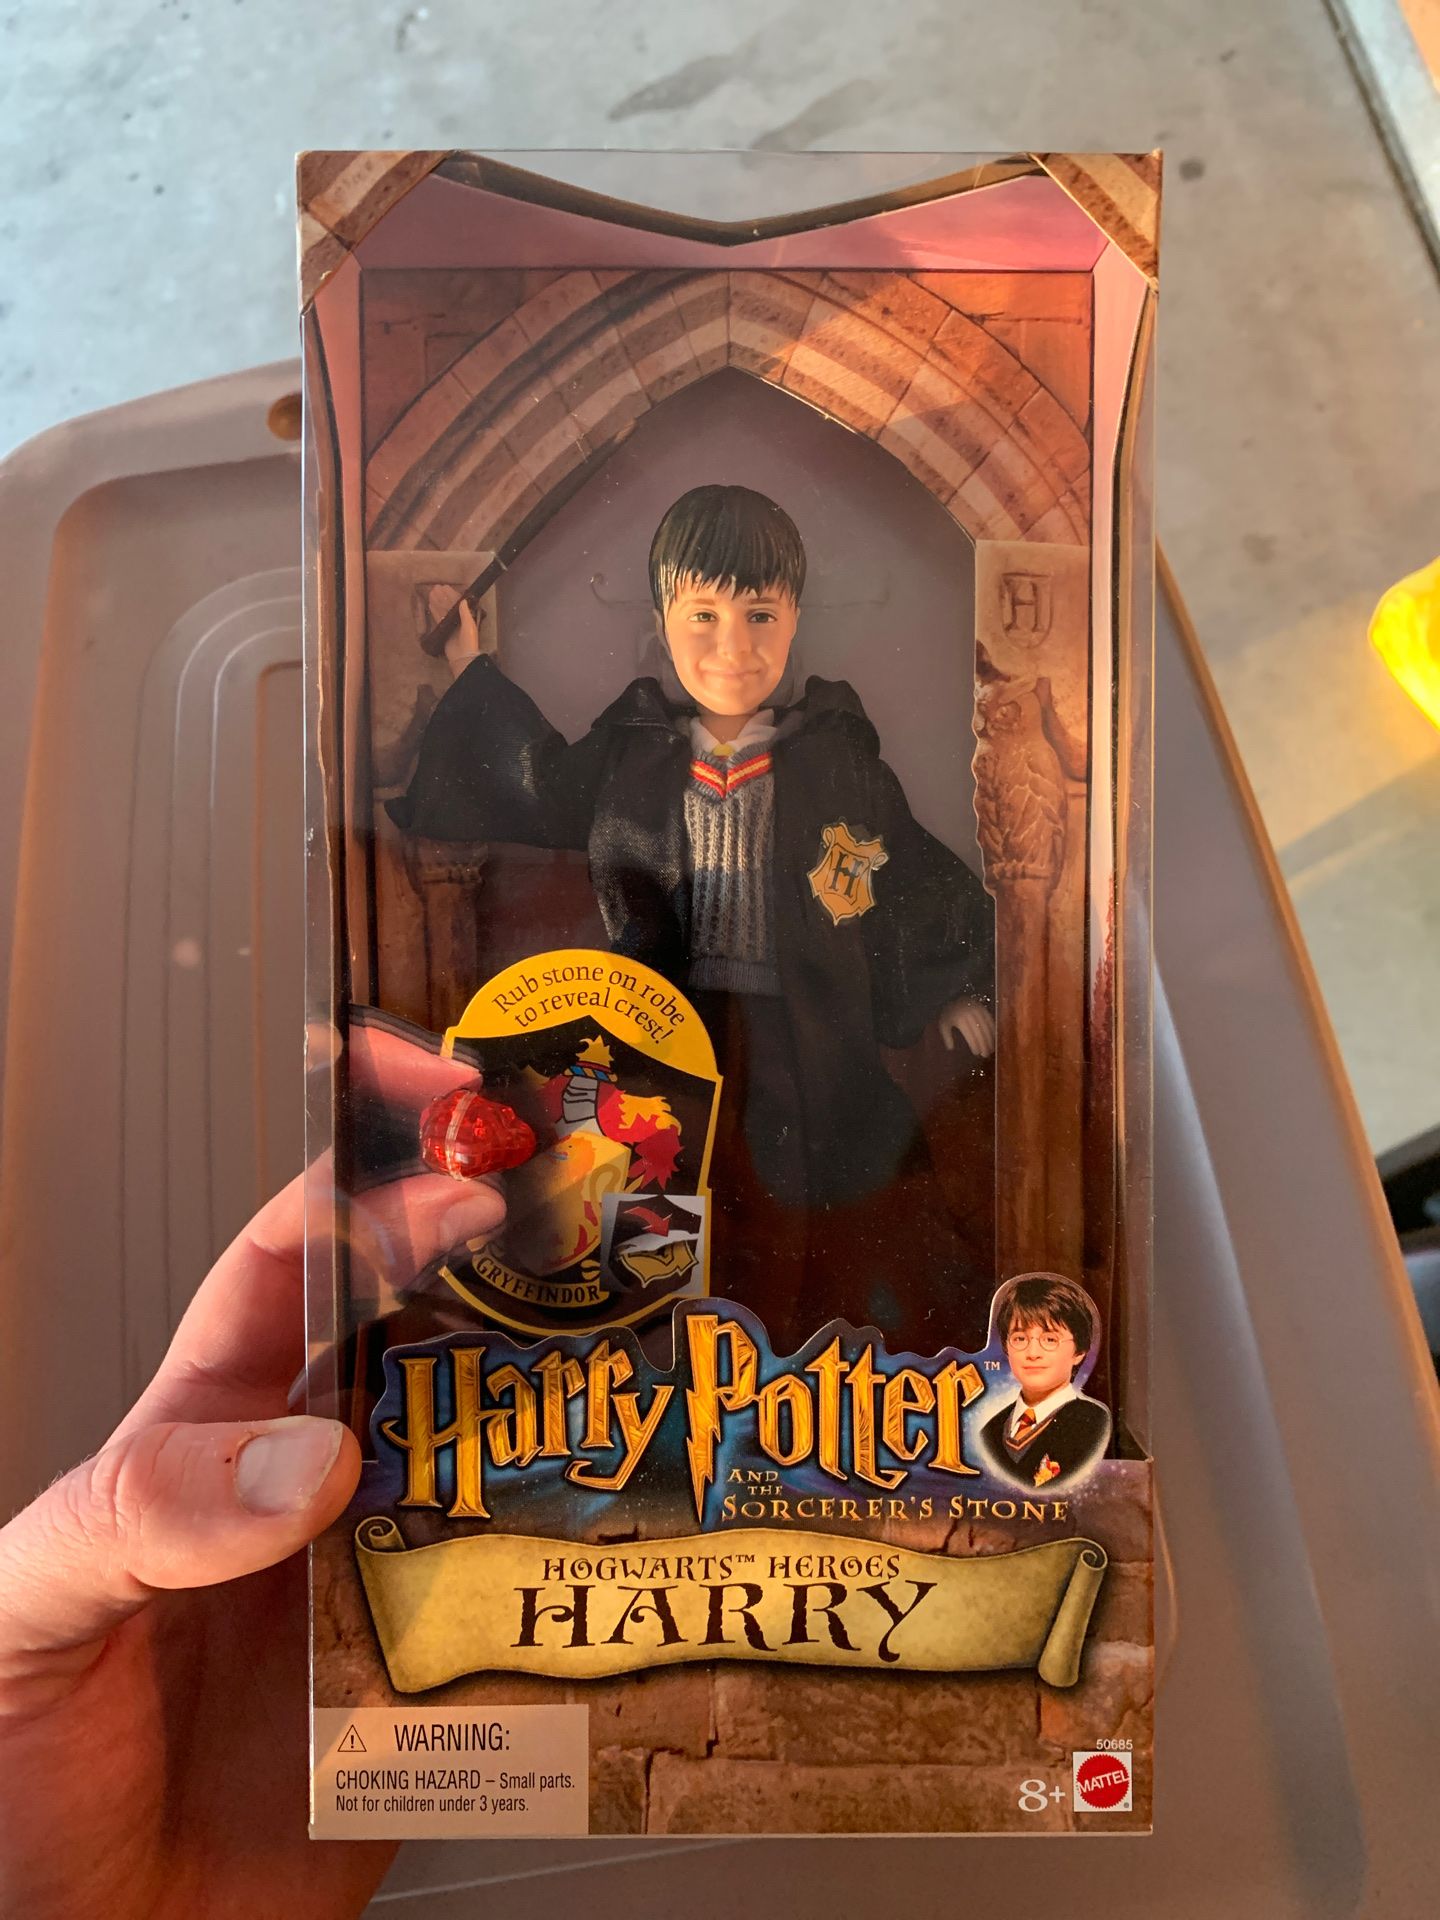 Harry Potter hogwarts hero’s Harry